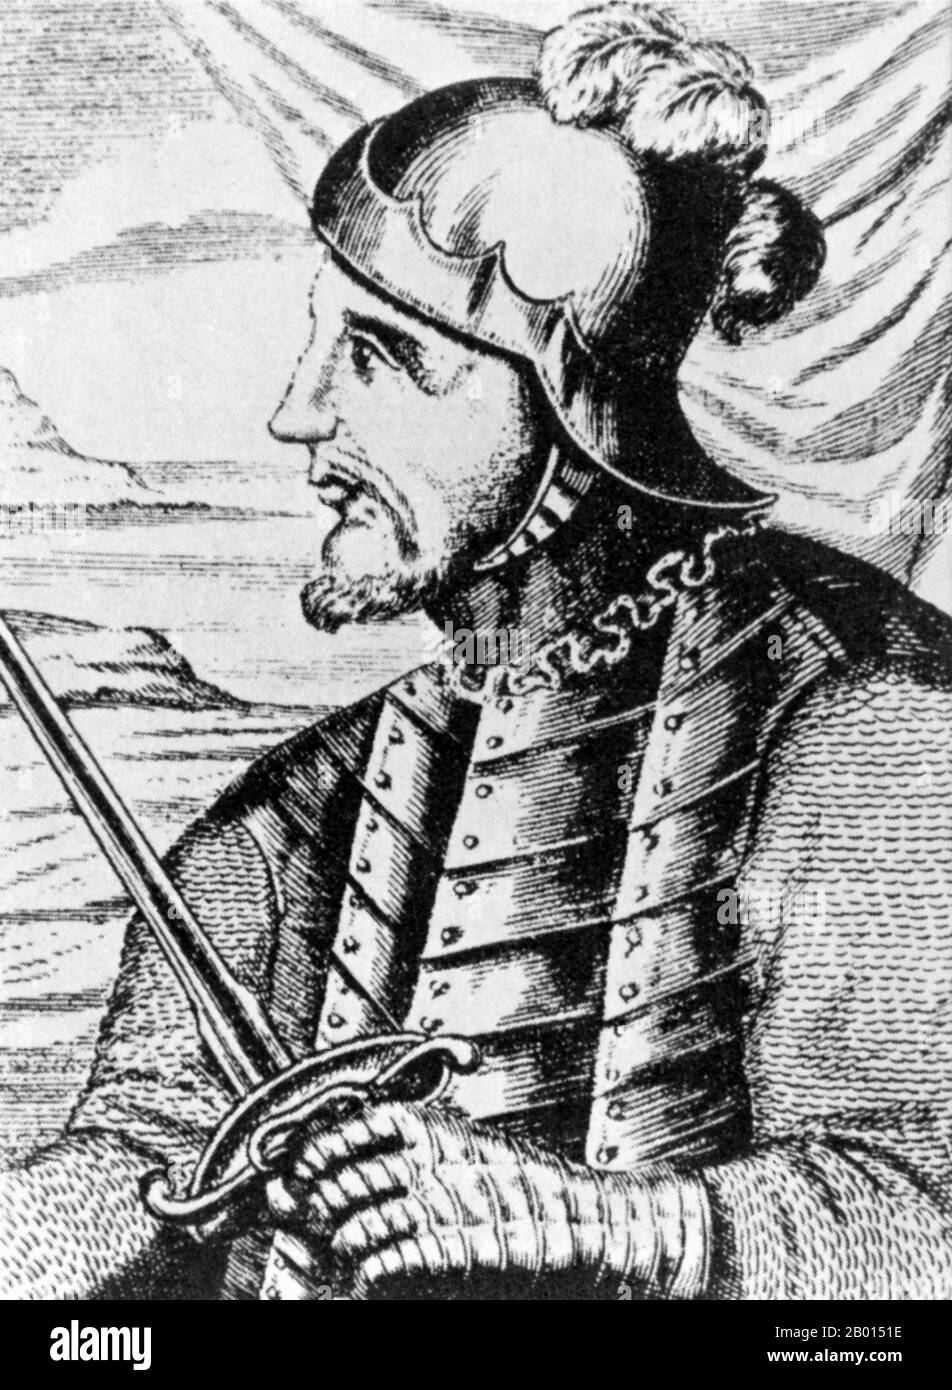 Panama/Spanien: Vasco Núñez de Balboa (1475-1519), der erste Europäer, der den Pazifischen Ozean sah, nachdem er 1513 den Isthmus von Panama überquert hatte. Gravur, c. 1886. Vasco Núñez de Balboa war ein spanischer Entdecker, Gouverneur und Eroberer. Er ist am besten dafür bekannt, dass er 1513 den Isthmus von Panama zum Pazifischen Ozean überquerte und damit der erste Europäer wurde, der eine Expedition führte, die den Pazifik von der Neuen Welt aus gesehen oder erreicht hat. Er reiste 1500 in die Neue Welt und ließ sich nach einigen Erkundungen auf der Insel Hispaniola (heute Dominikanische Republik und Haiti) nieder. Stockfoto